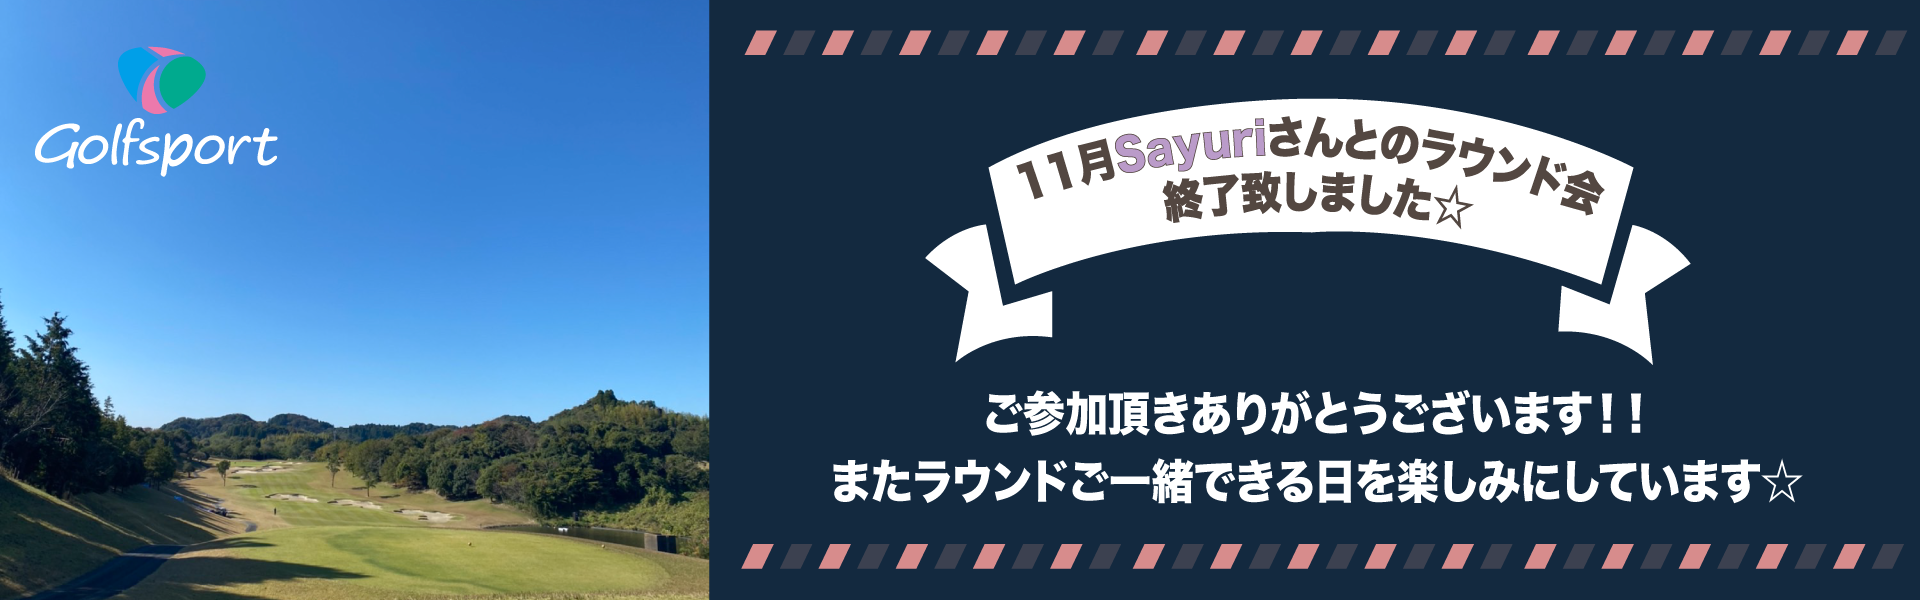 11月Sayuri☆さんとのラウンド会⛳️inデイスターゴルフクラブ🌟ご参加ありがとうございました!